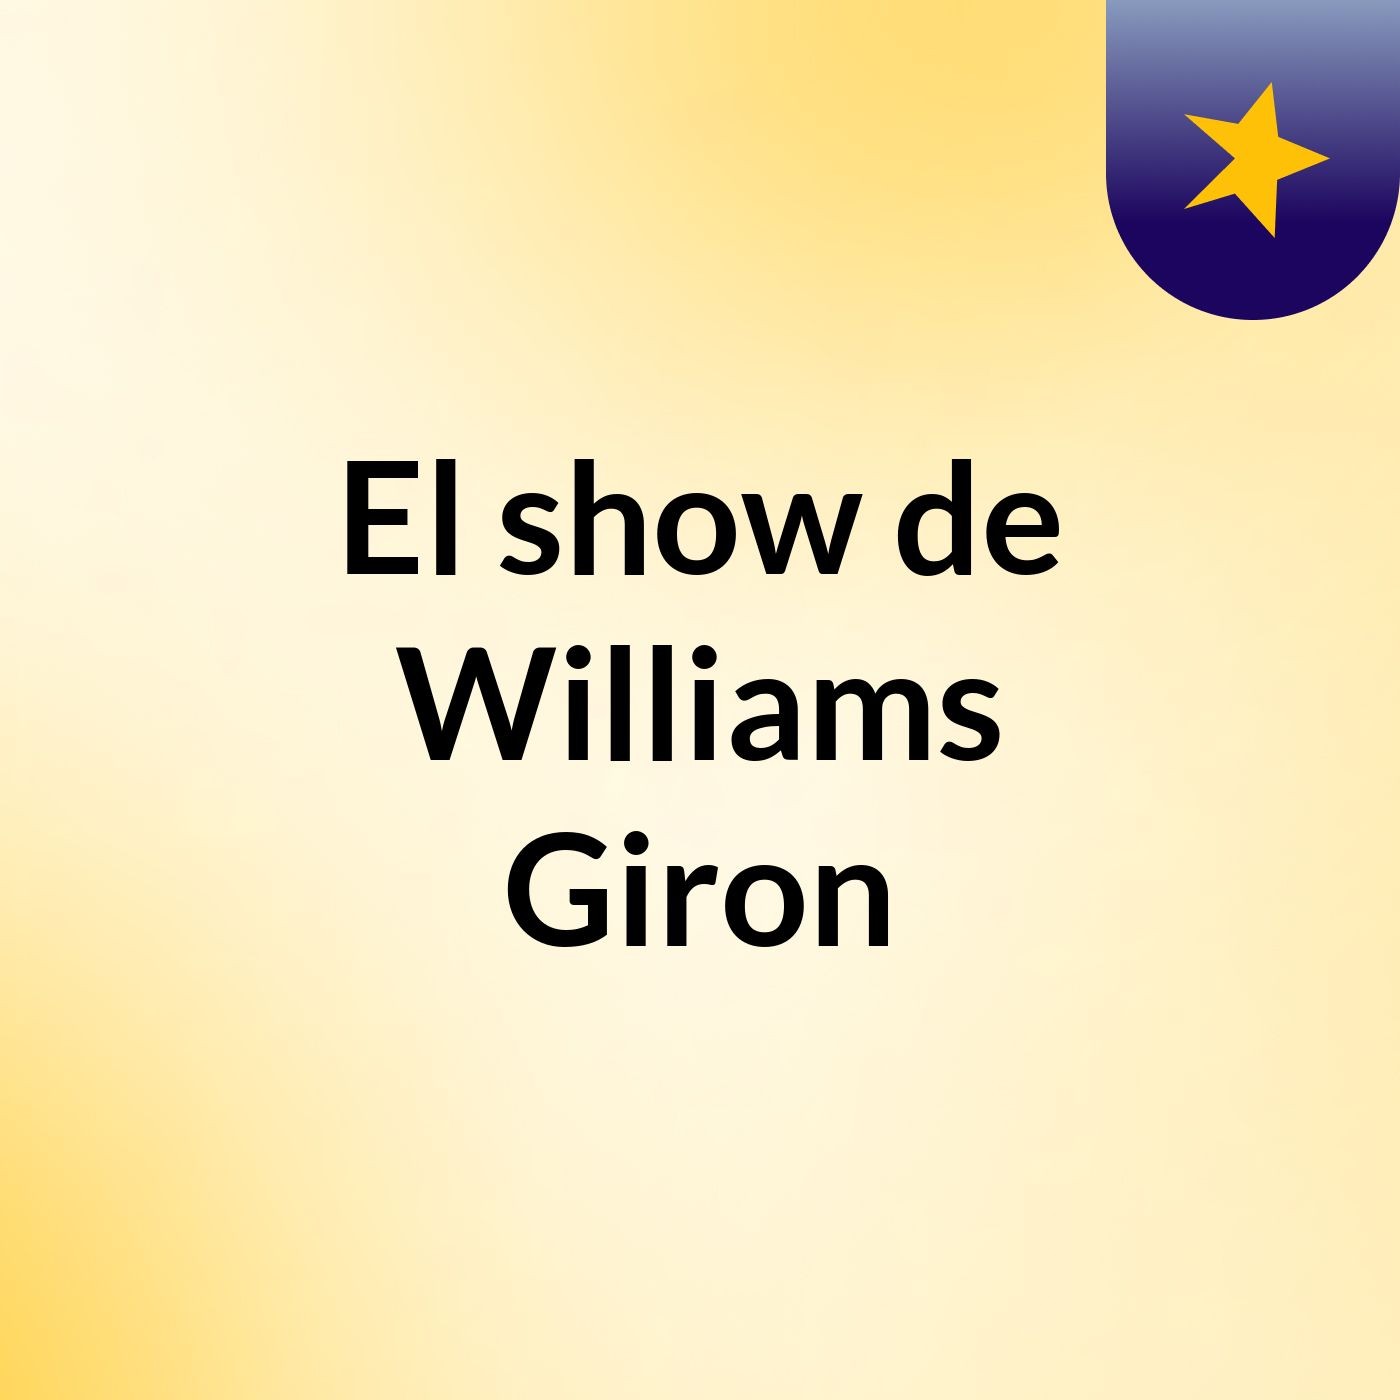 El show de Williams Giron